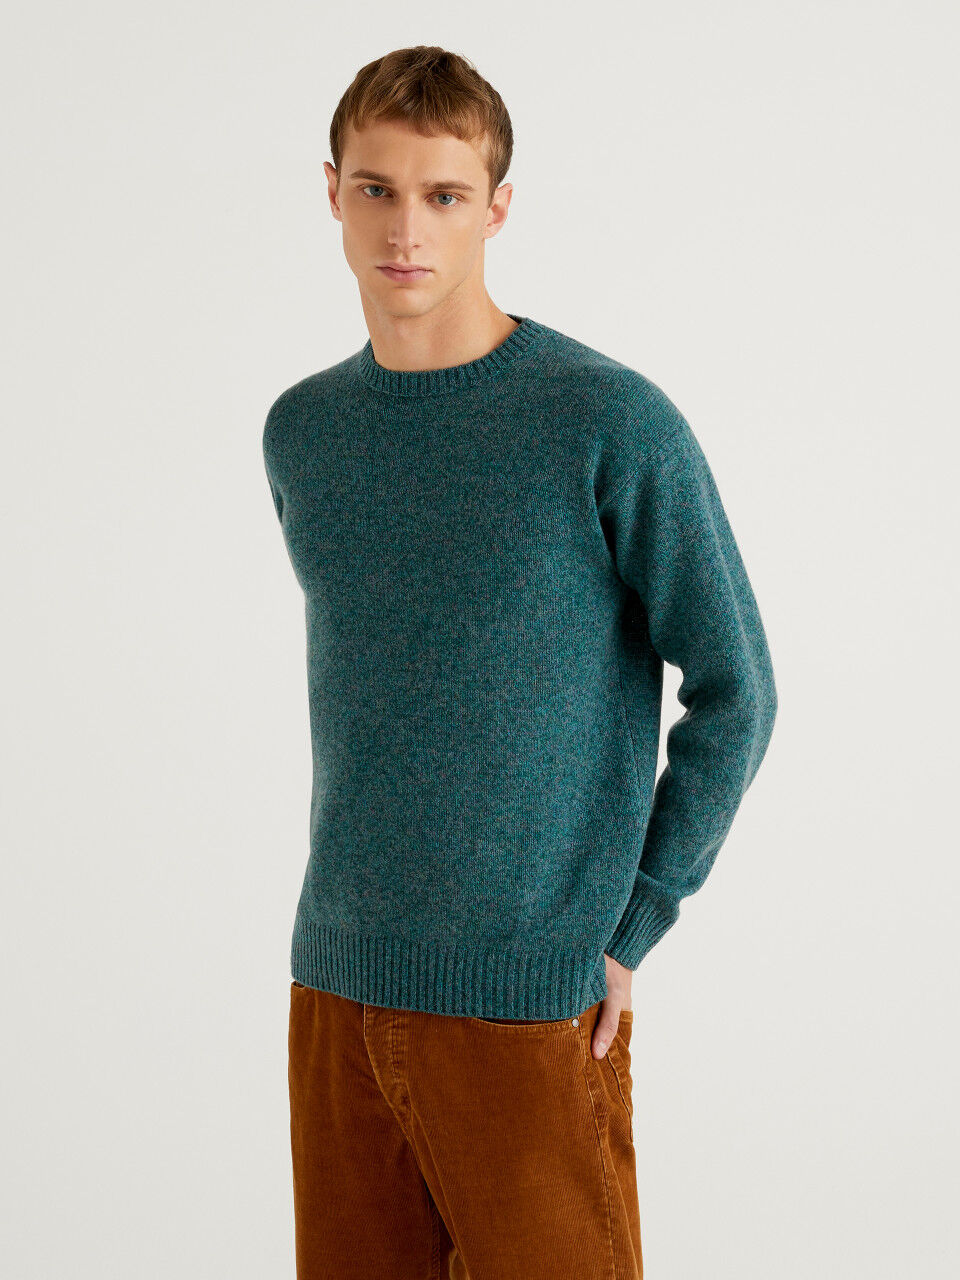 Ballantyne Andere materialien sweater in Braun für Herren Herren Bekleidung Pullover und Strickware Rundhals Pullover 